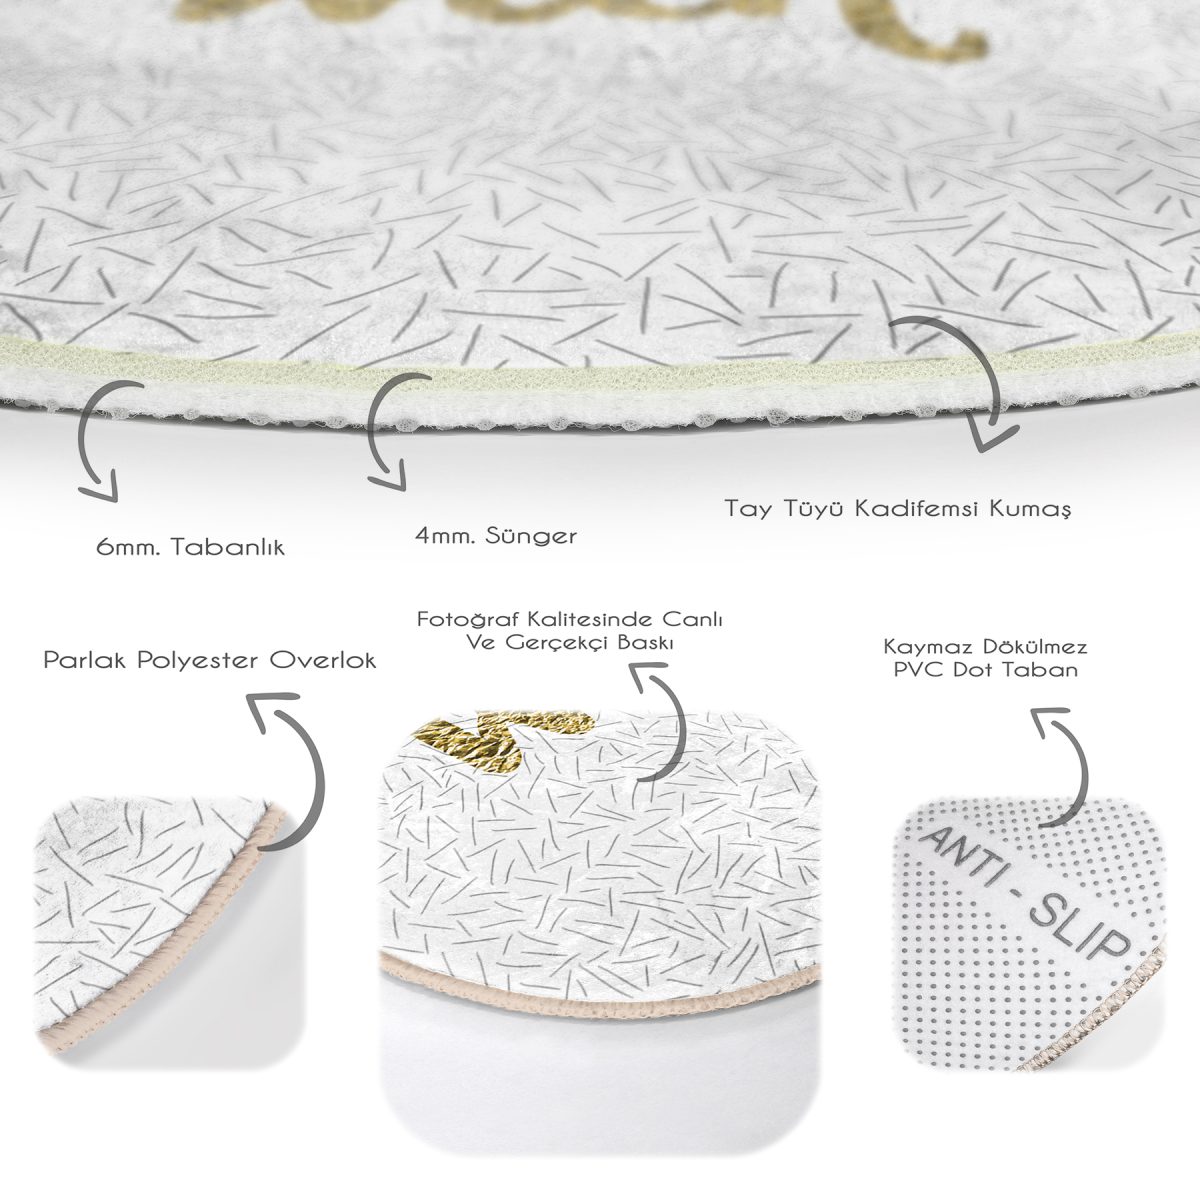 Beyaz Zeminli Gold Renkli With Yazılı Dijital Baskılı Modern Mutfak Yıkanabilir Kaymaz Tabanlı Yuvarlak Halı Realhomes